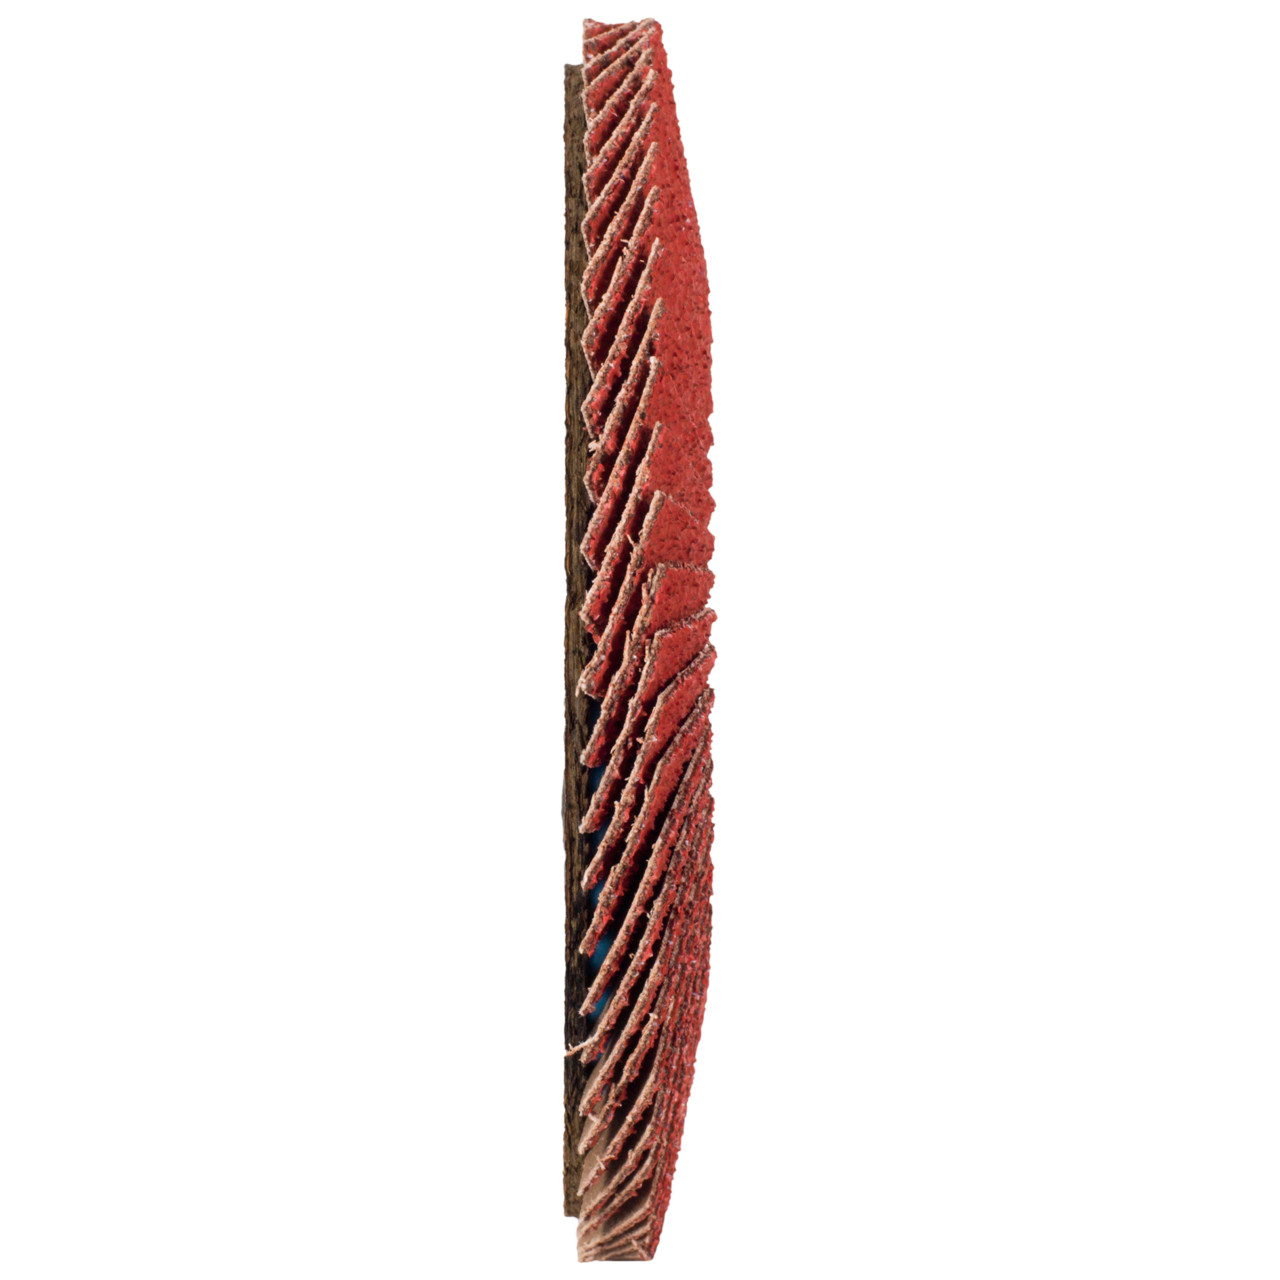 Tyrolit Rondelle éventail DxH 178x22,23 CERABOND Rondelle éventail pour acier inoxydable, P80, forme : 28A - modèle droit (modèle à corps en fibre de verre), art. 34166184